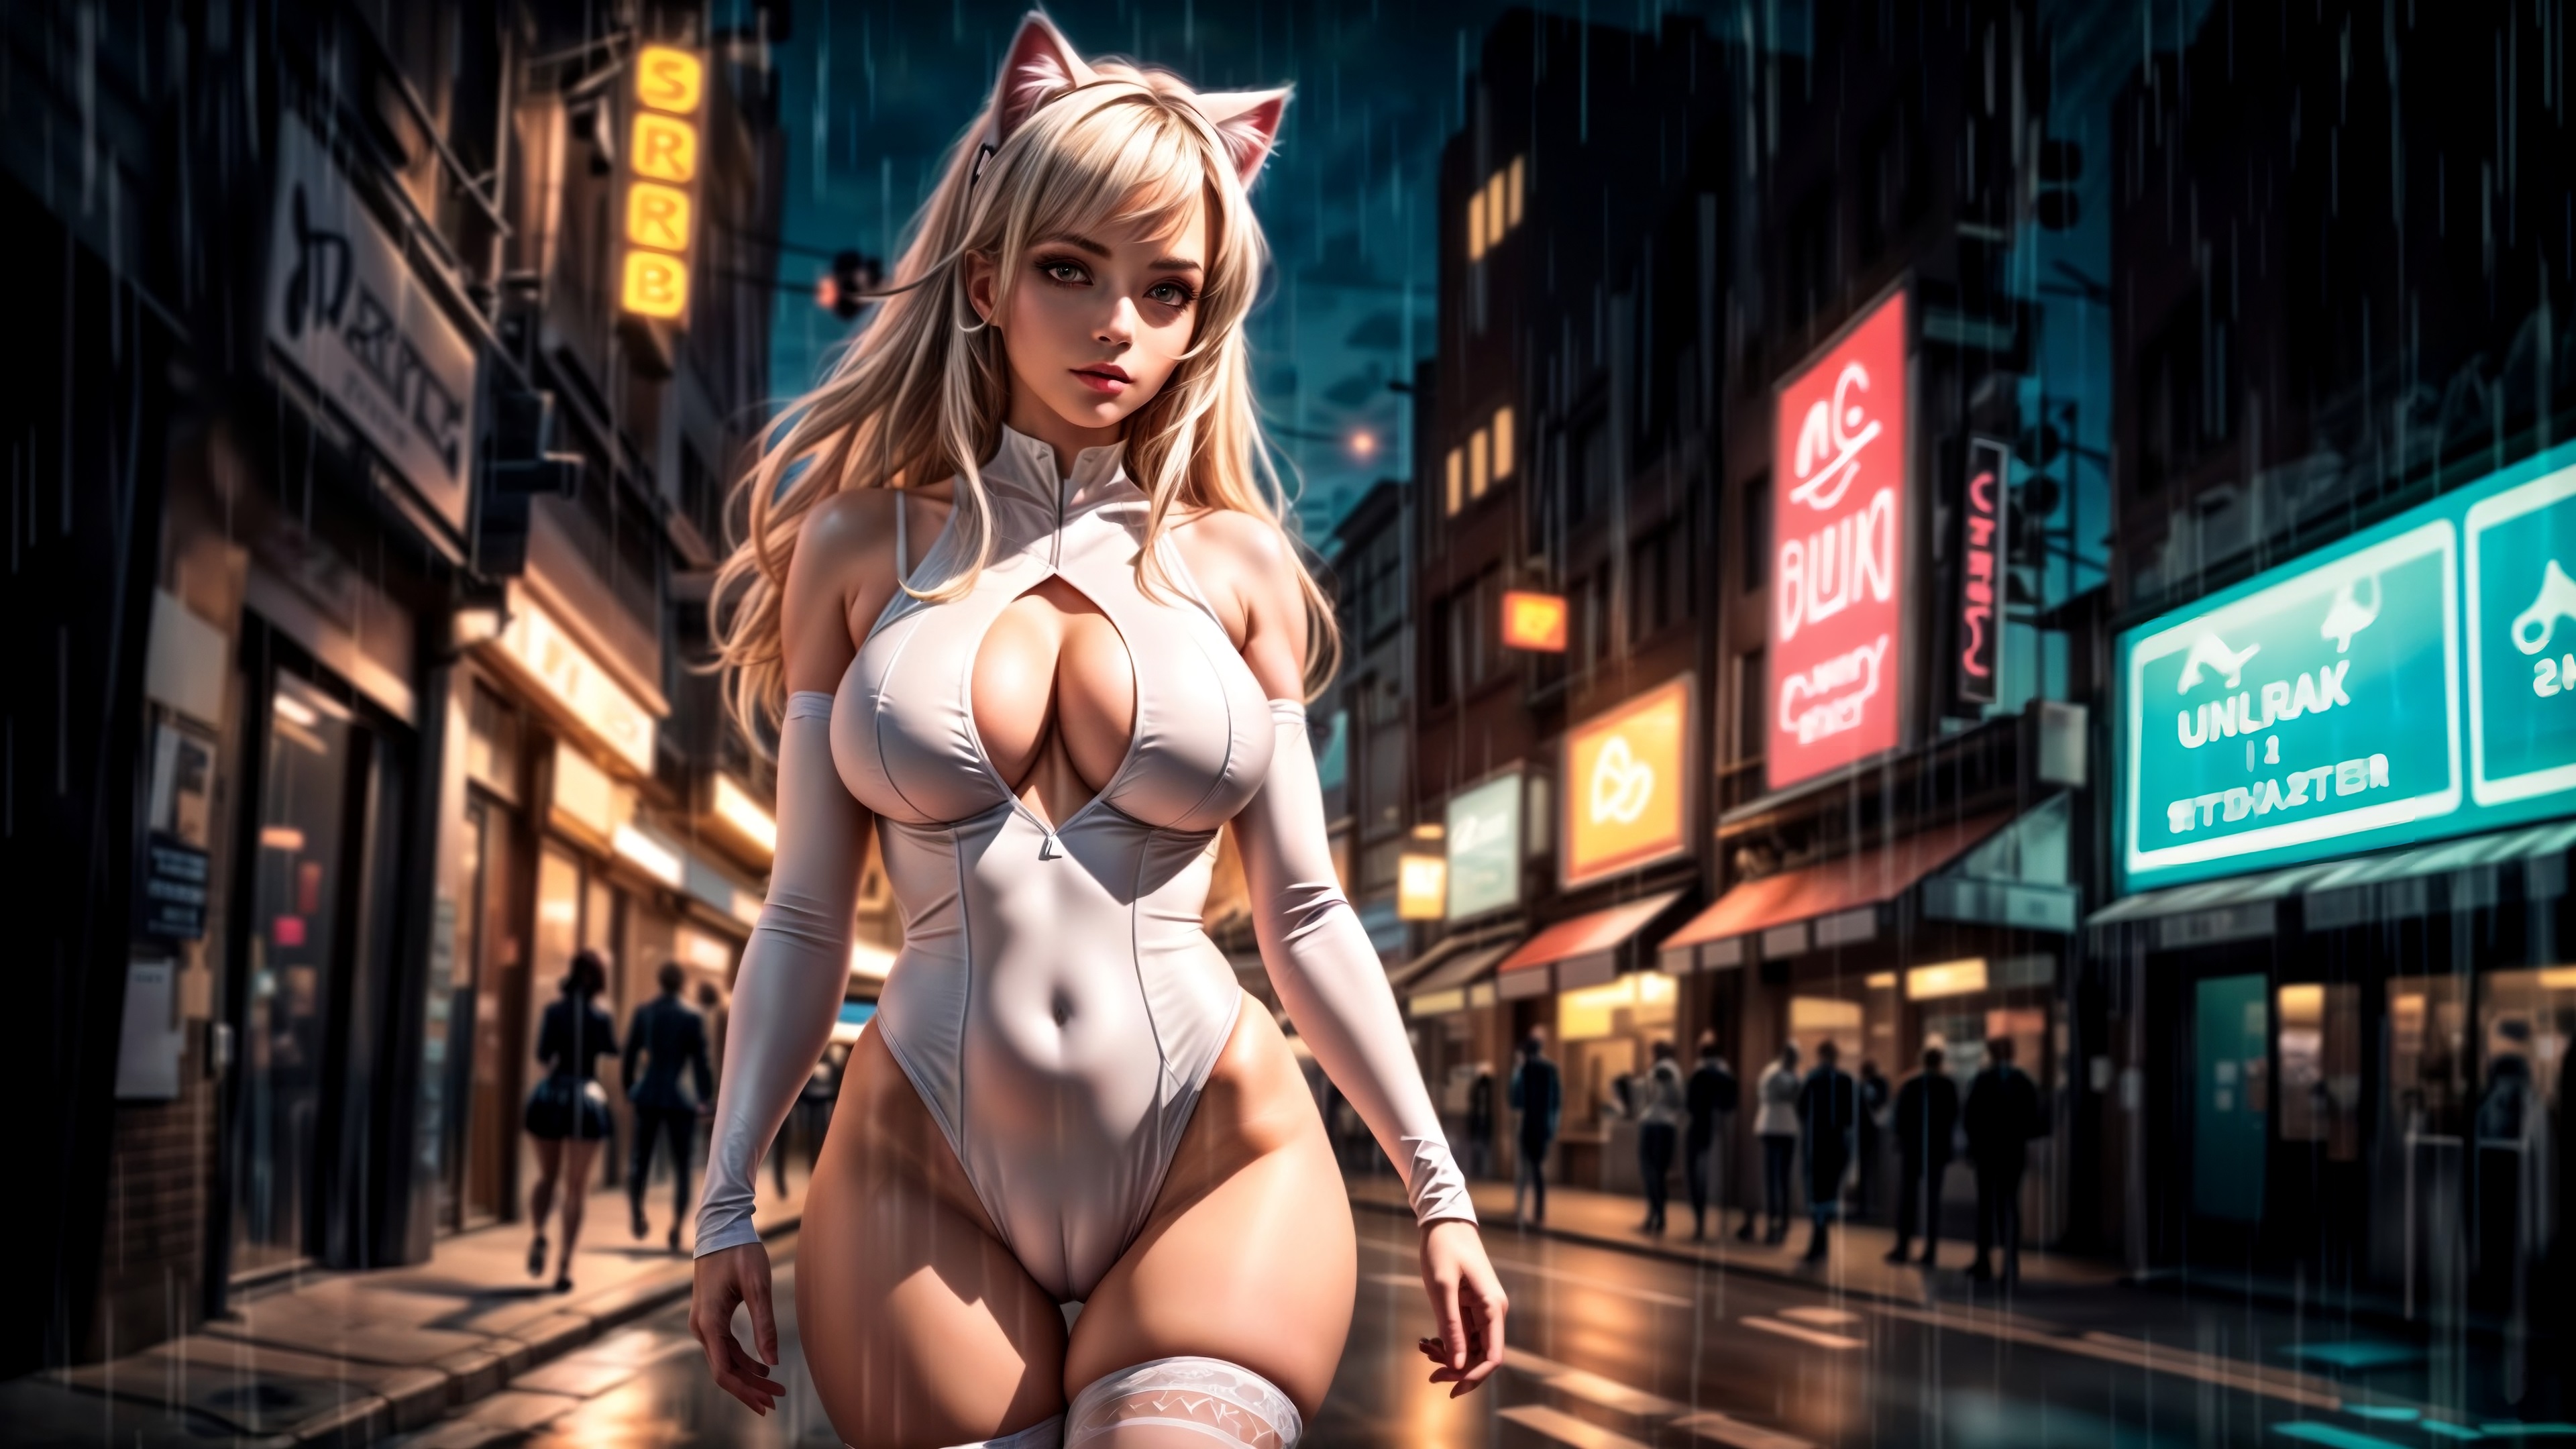 Бесплатное фото Девушка в боди на фоне ночной улицы города